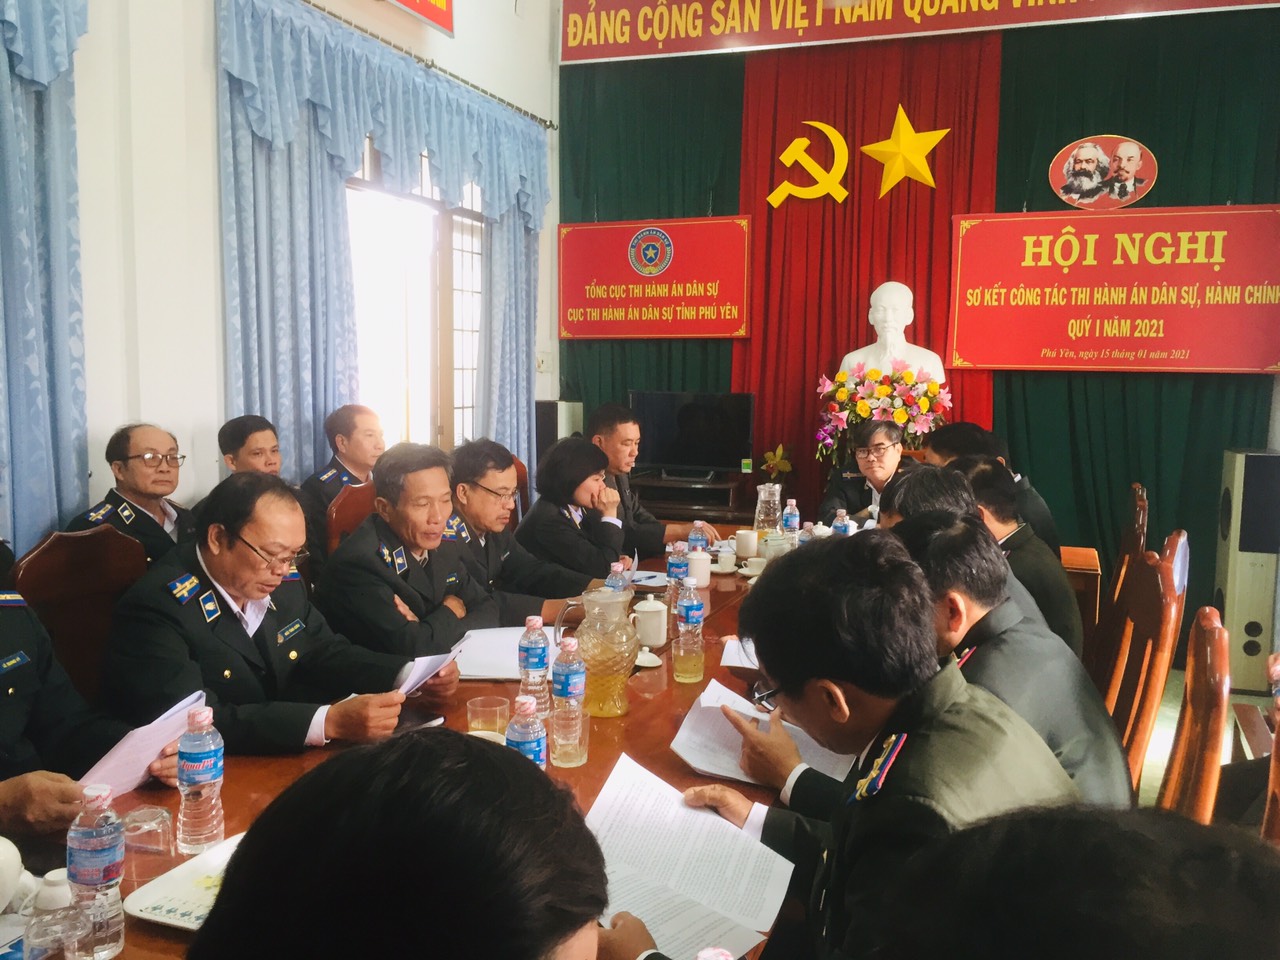 Thi hành án dân sự tỉnh Phú Yên tổ chức Hội nghị sơ kết công tác Thi hành án dân sự, hành chính Quý I năm 2021